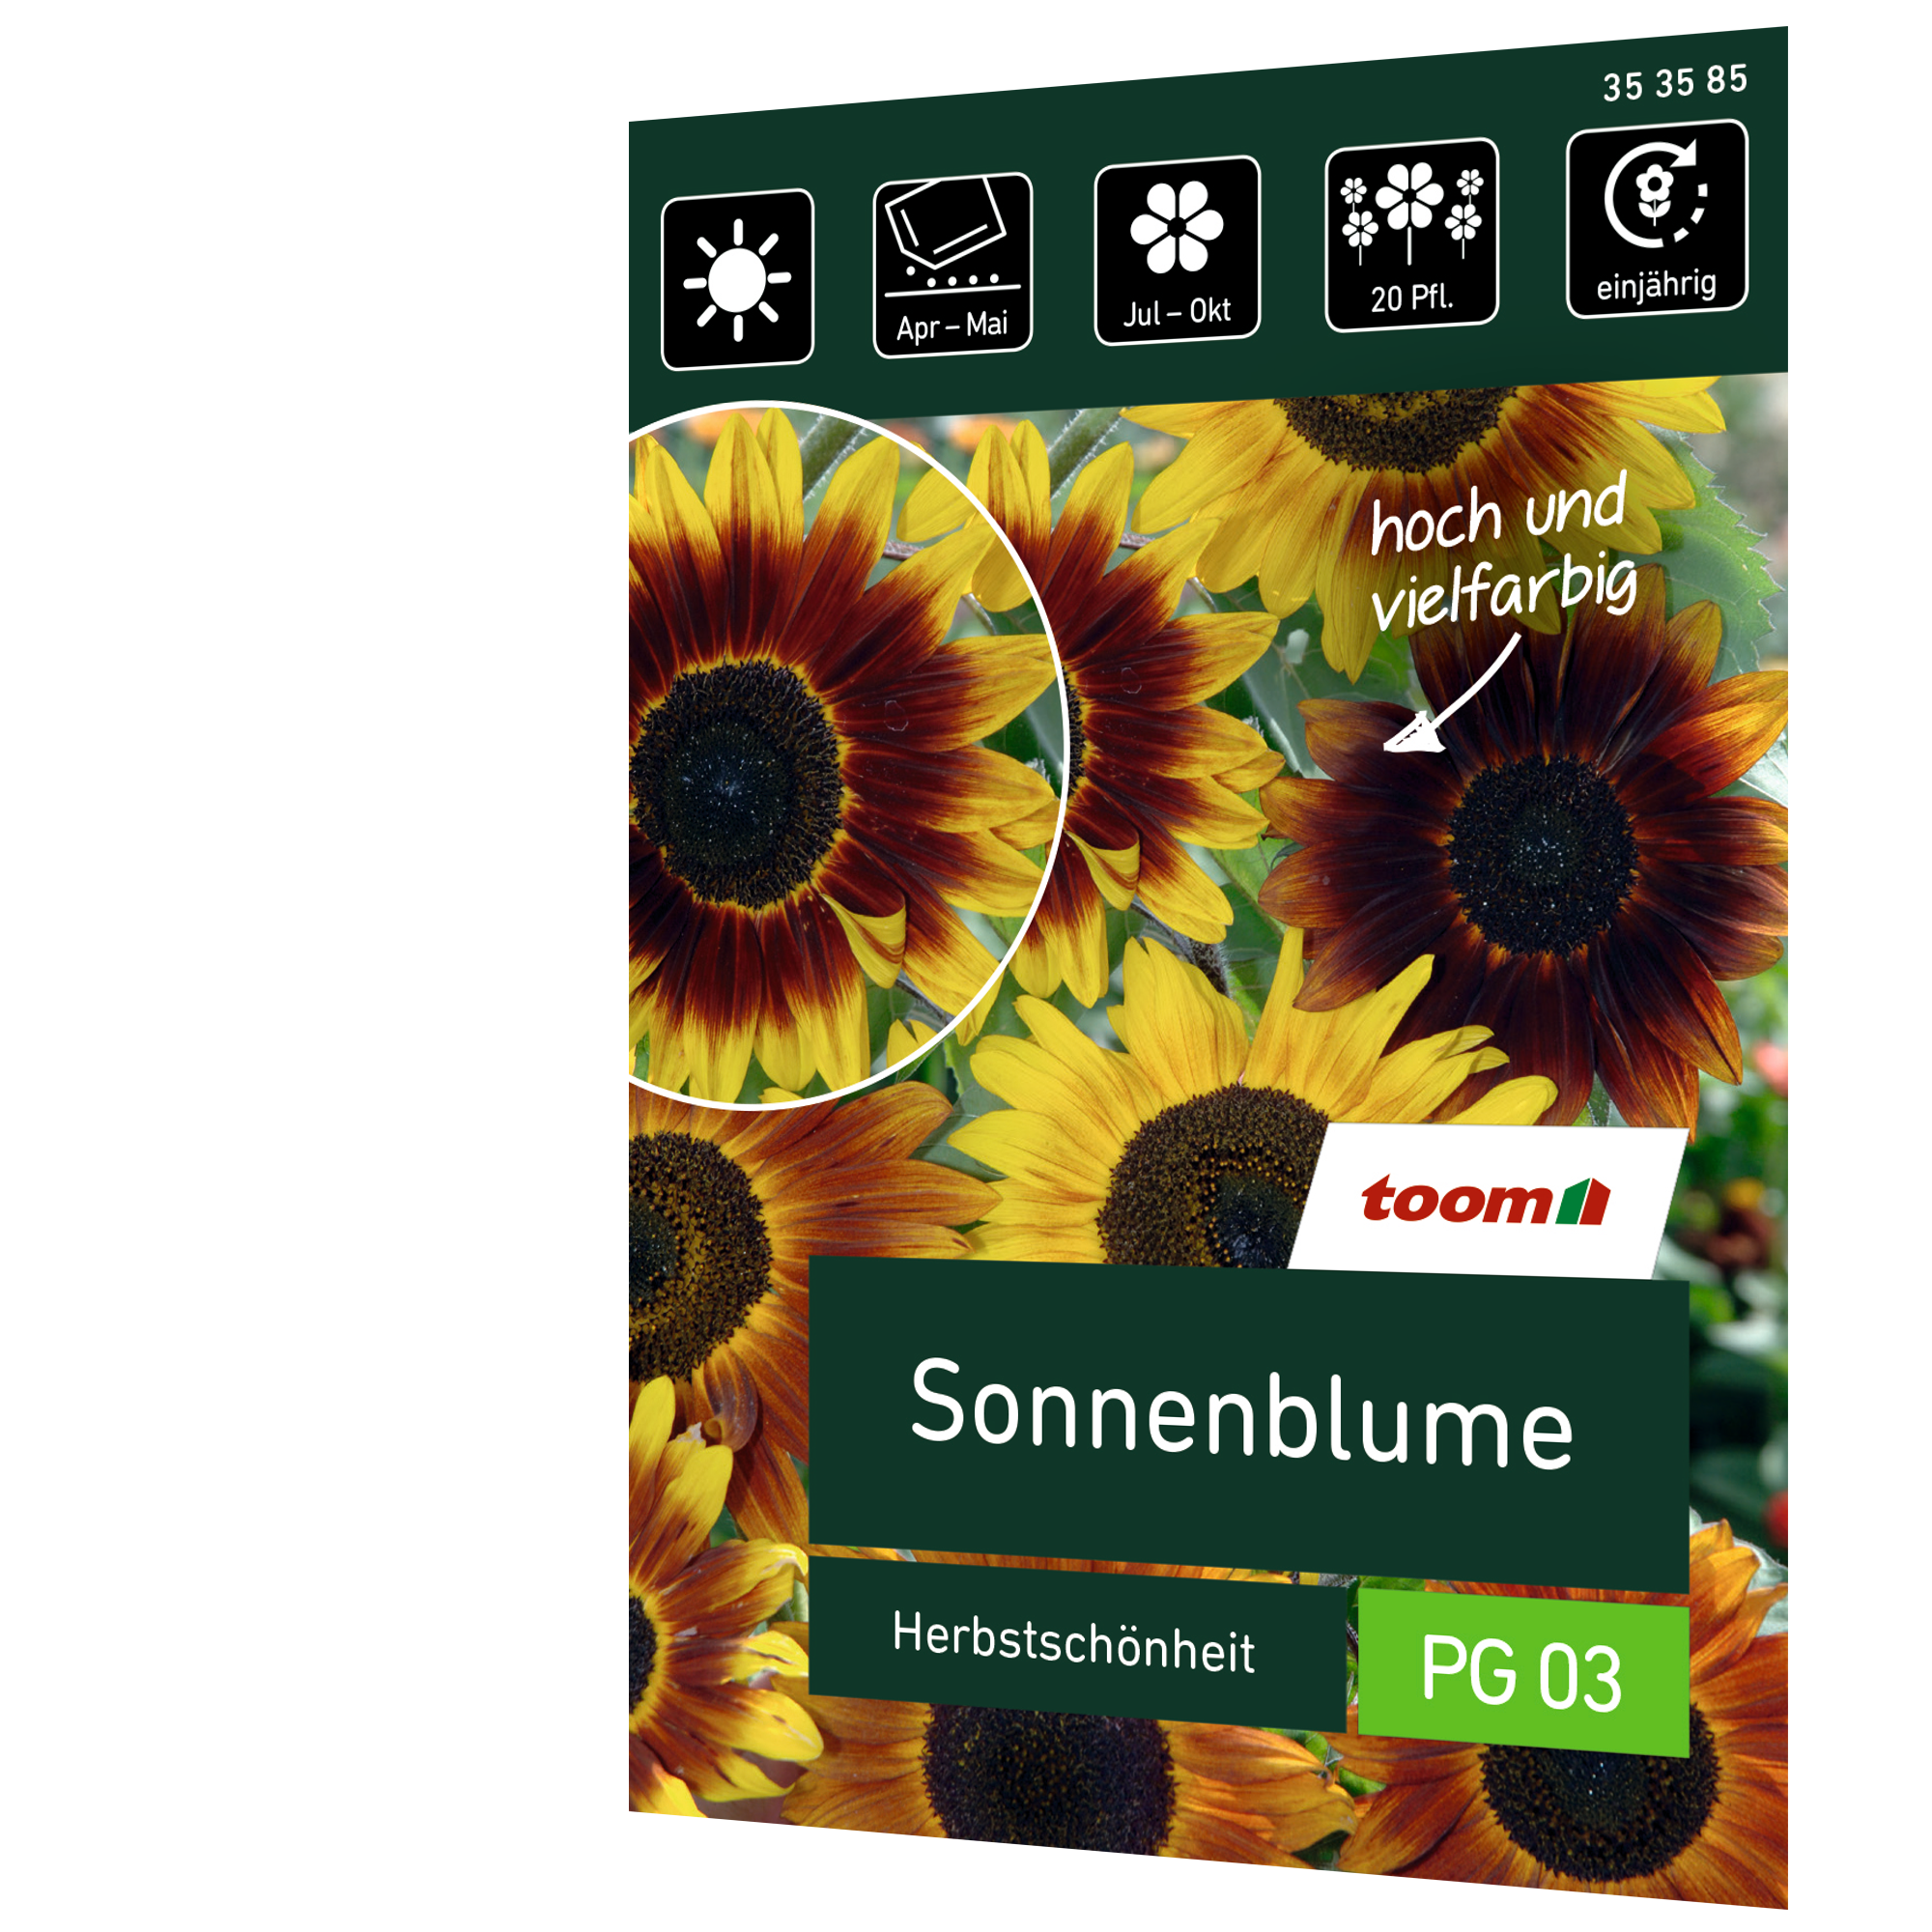 Sonnenblume 'Herbstschönheit' + product picture